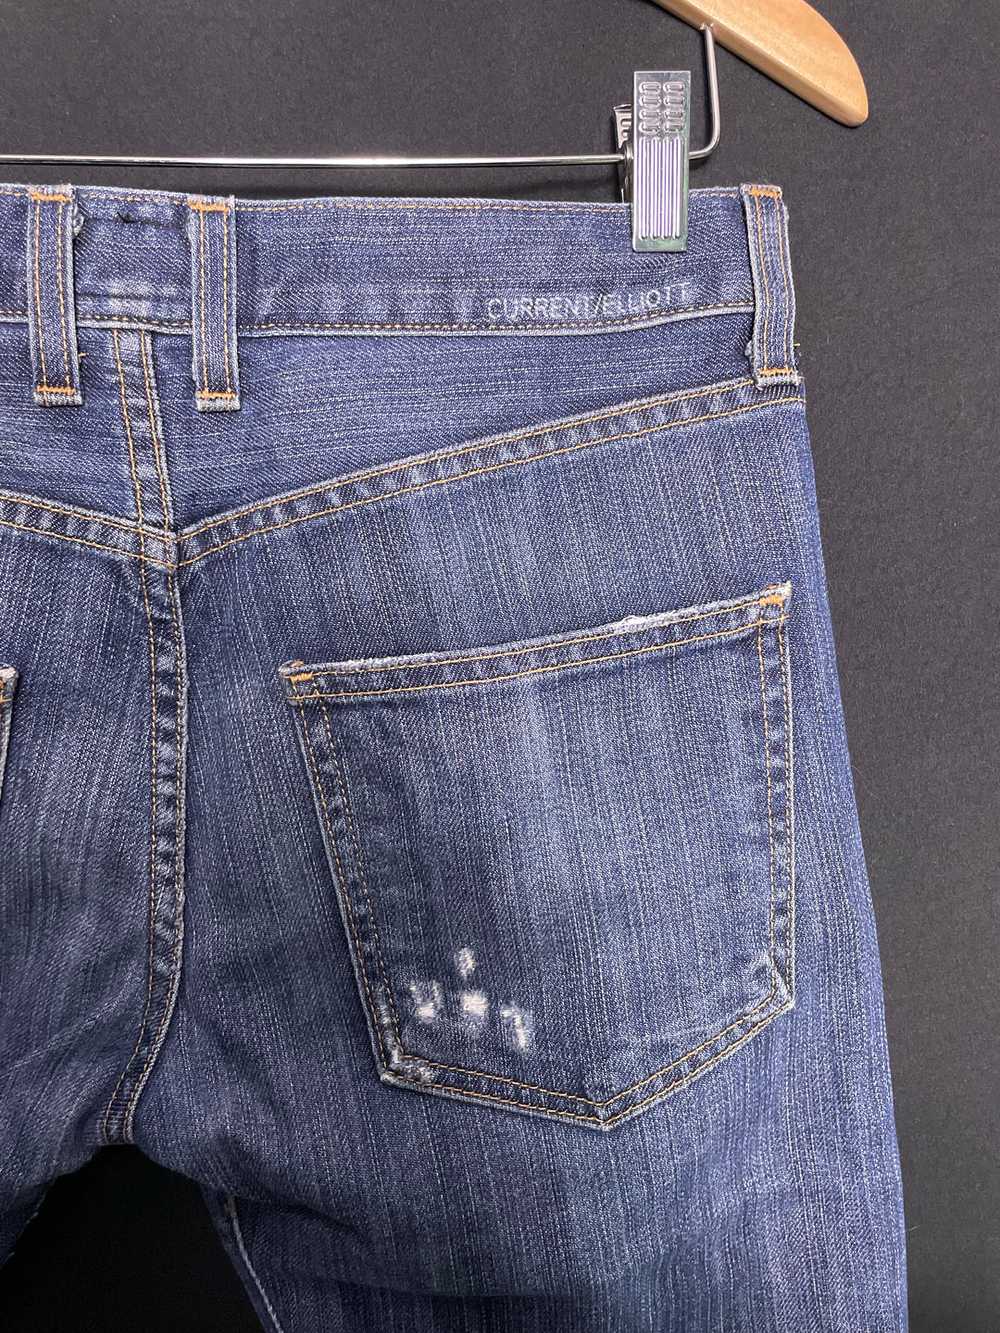 Current/Elliot Love Destroyed jeans, Size 30 - image 3